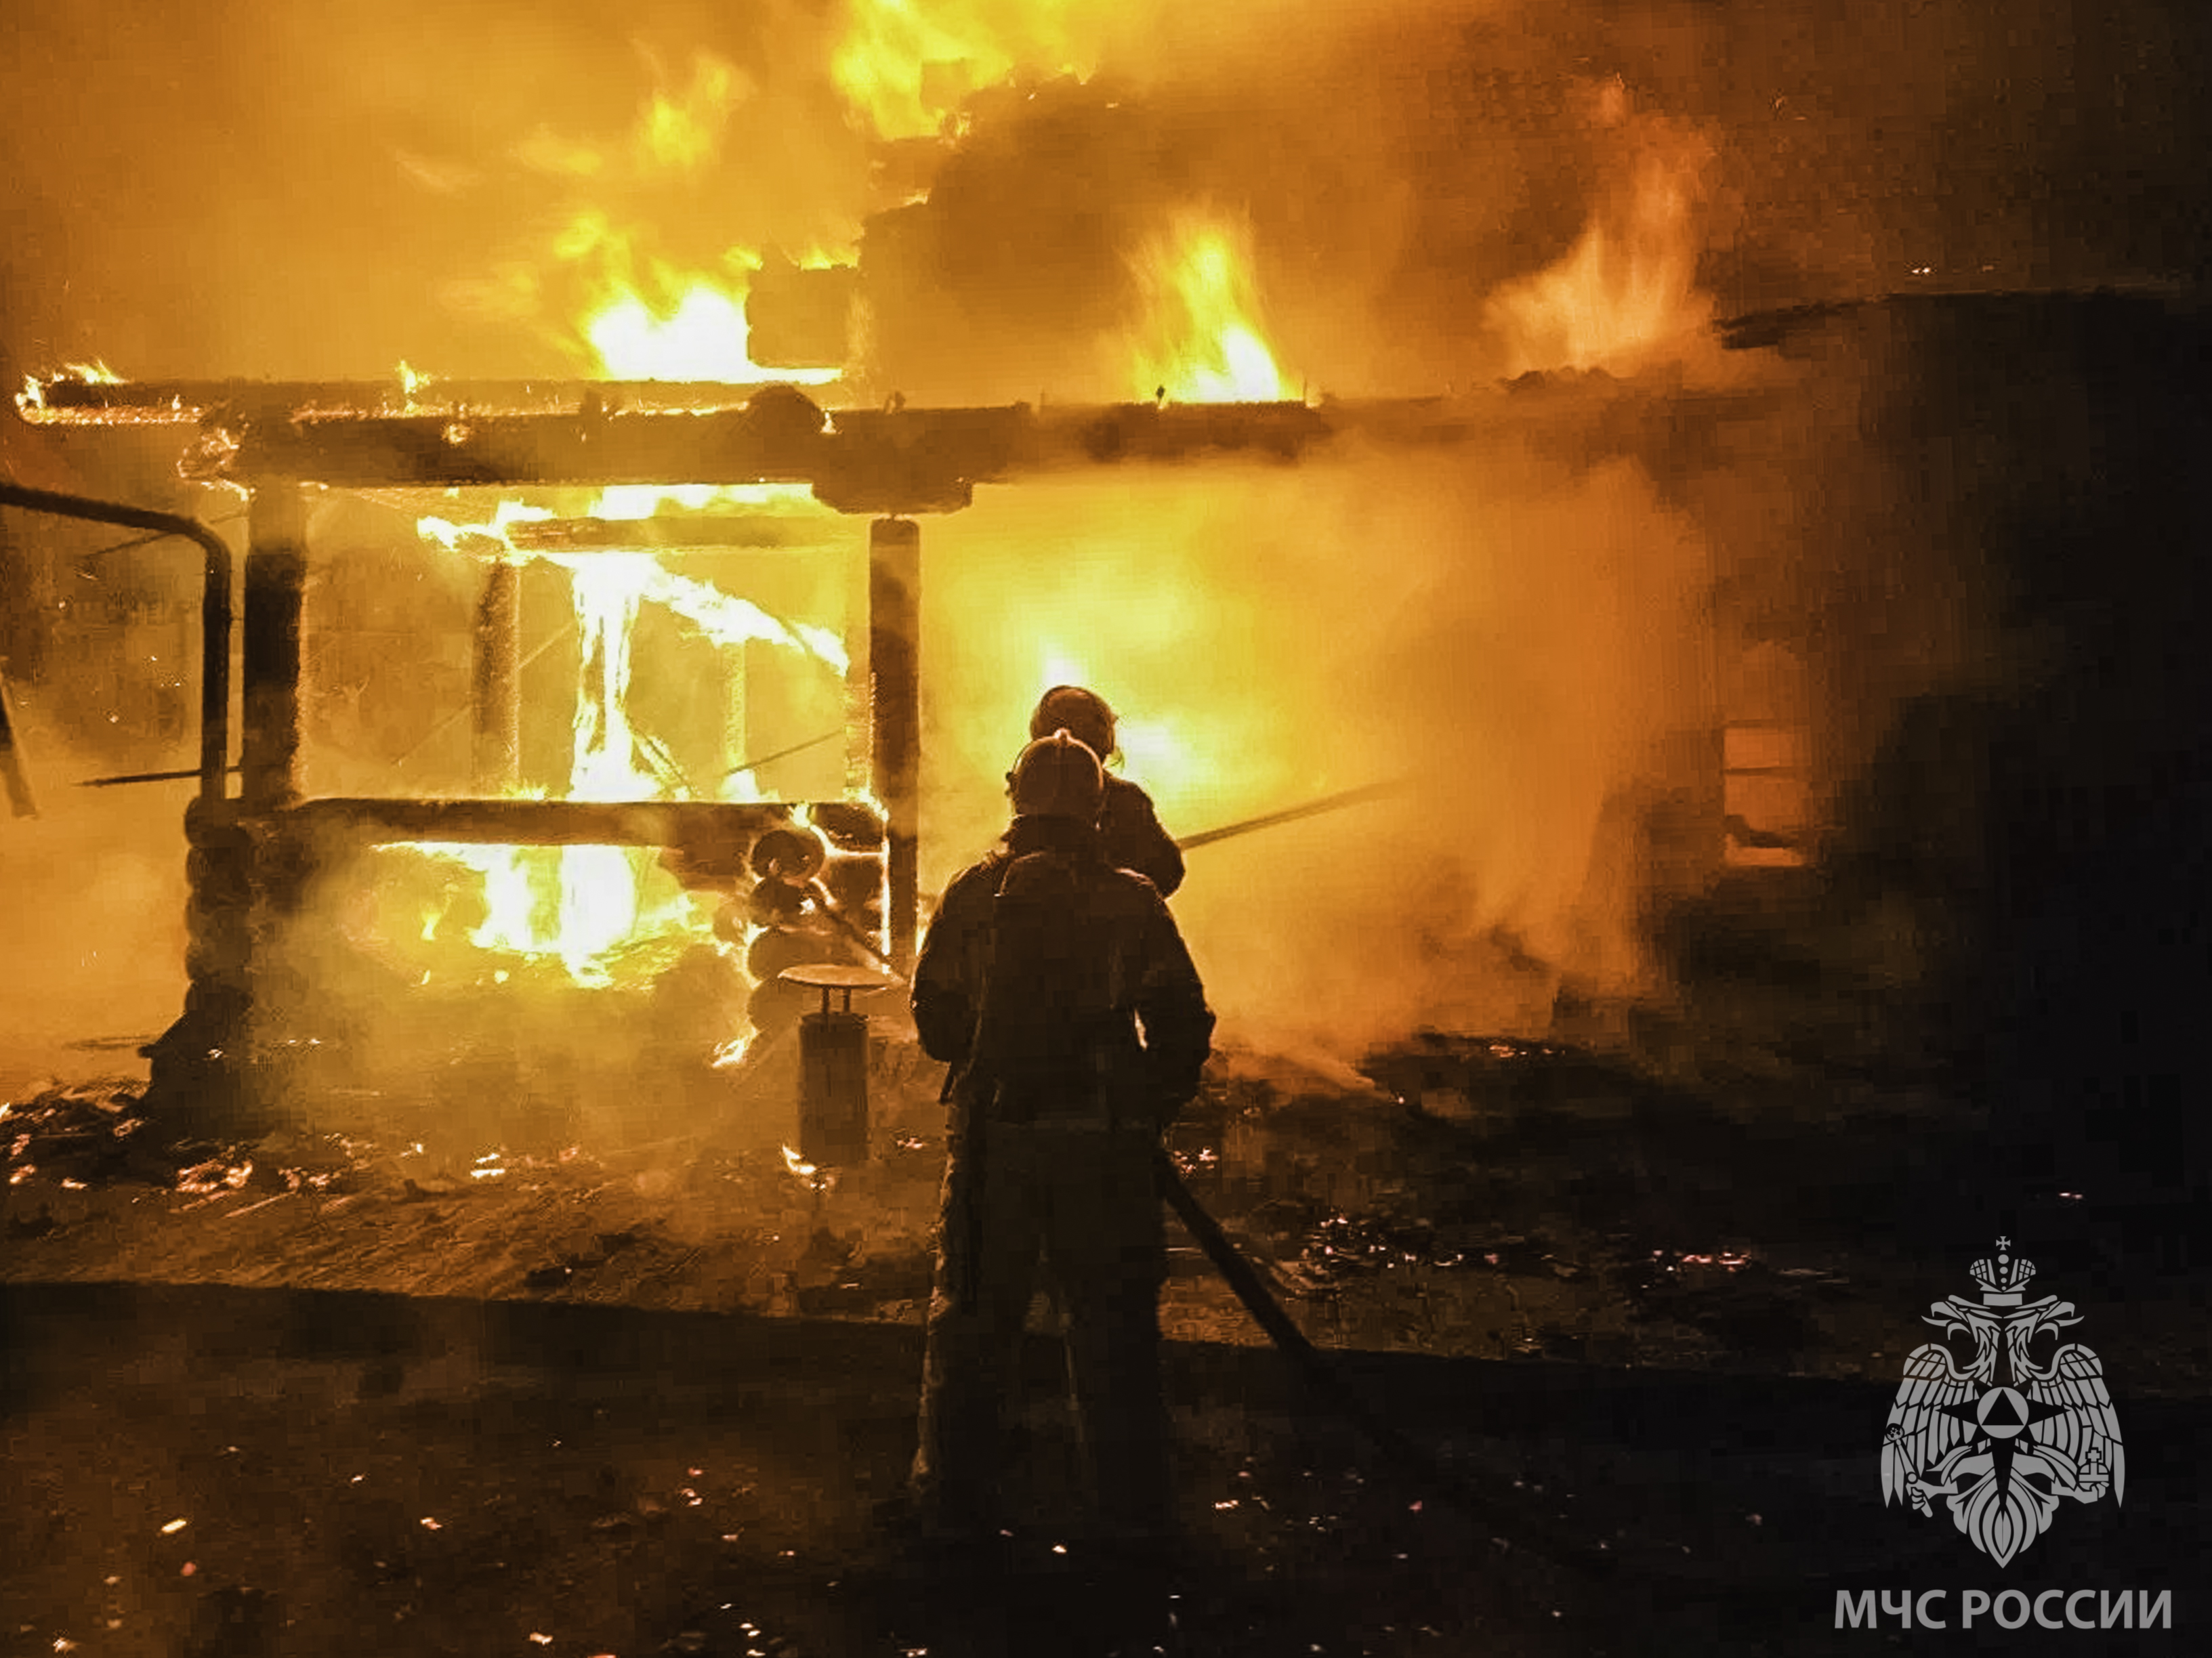 Сотрудники ДПС спасли омича из горящего дома #Омск #Общество #Сегодня